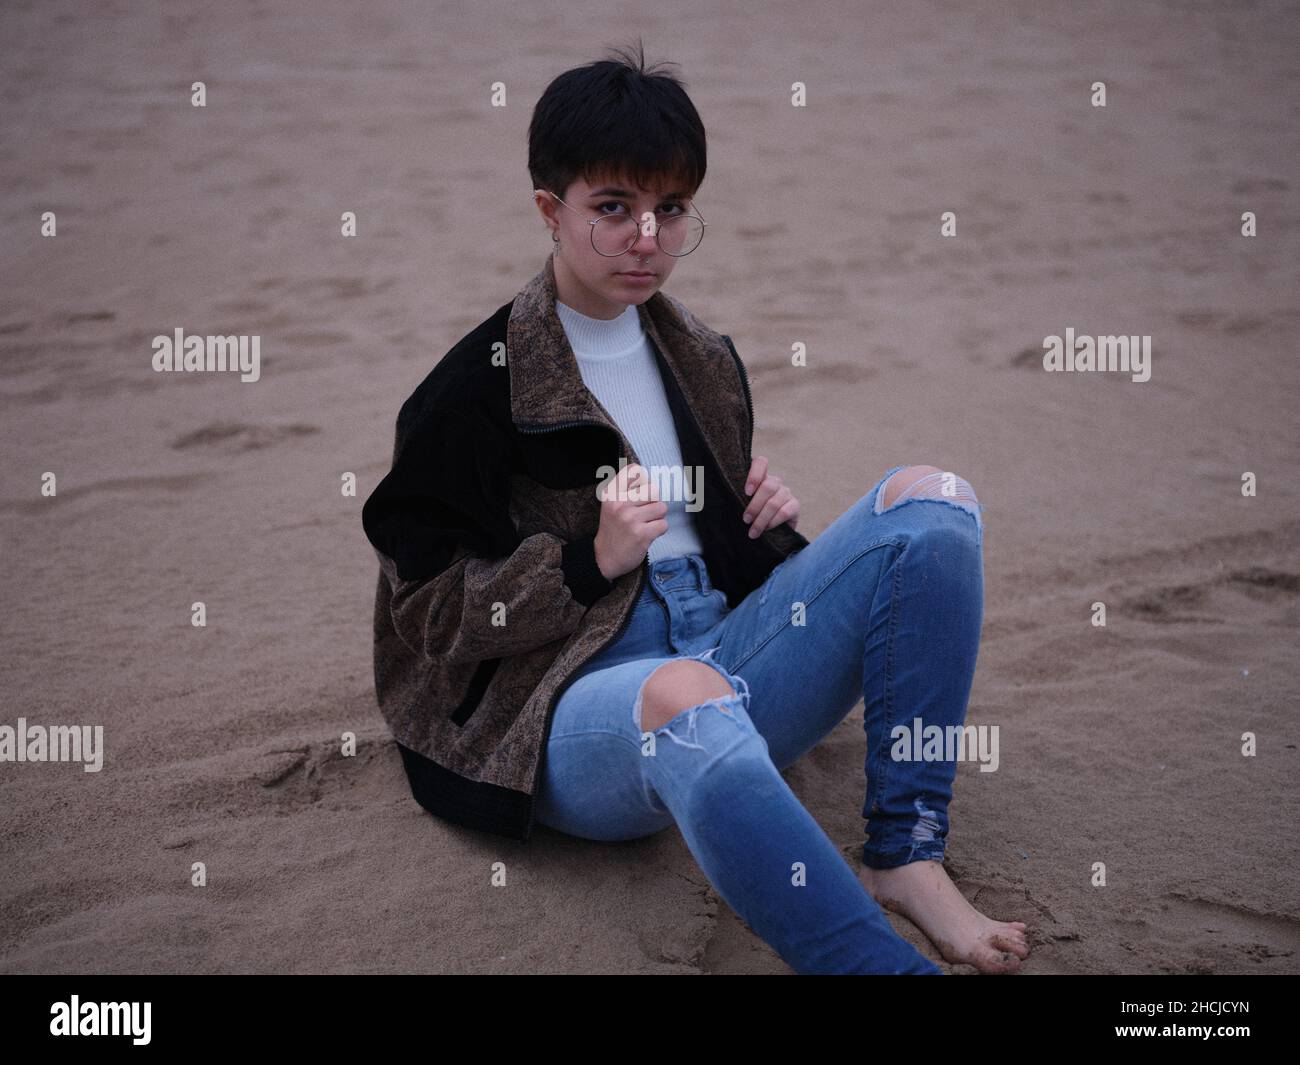 personne transgenre assise sur le sable avec une veste et des lunettes Banque D'Images